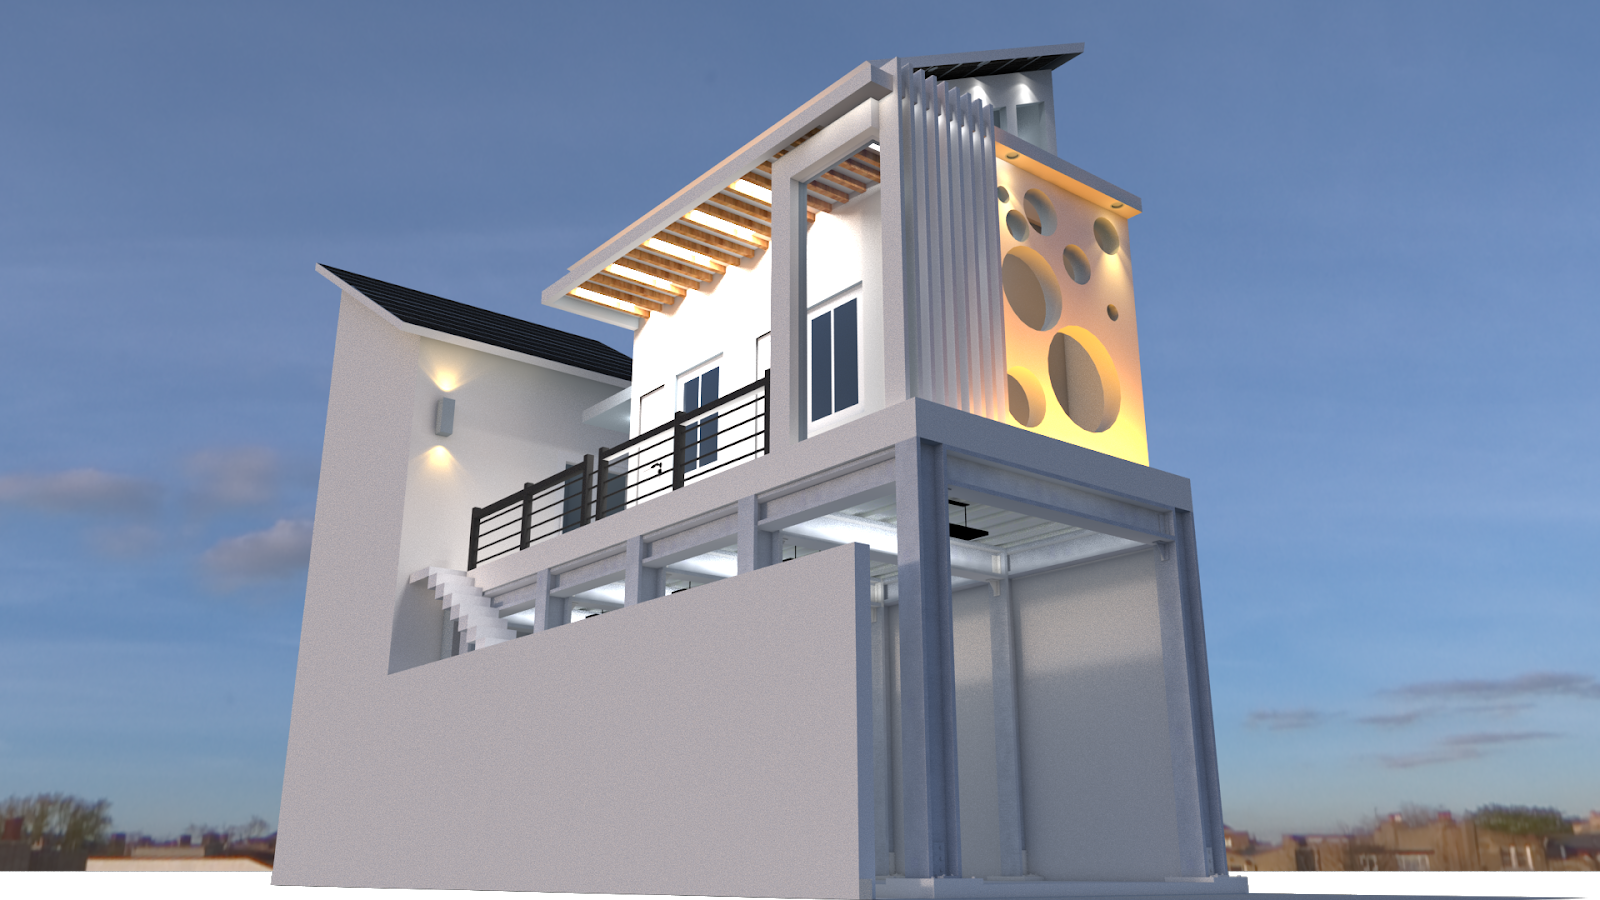 49 Desain Rumah 2 Lantai Lahan Sempit Gif SiPeti